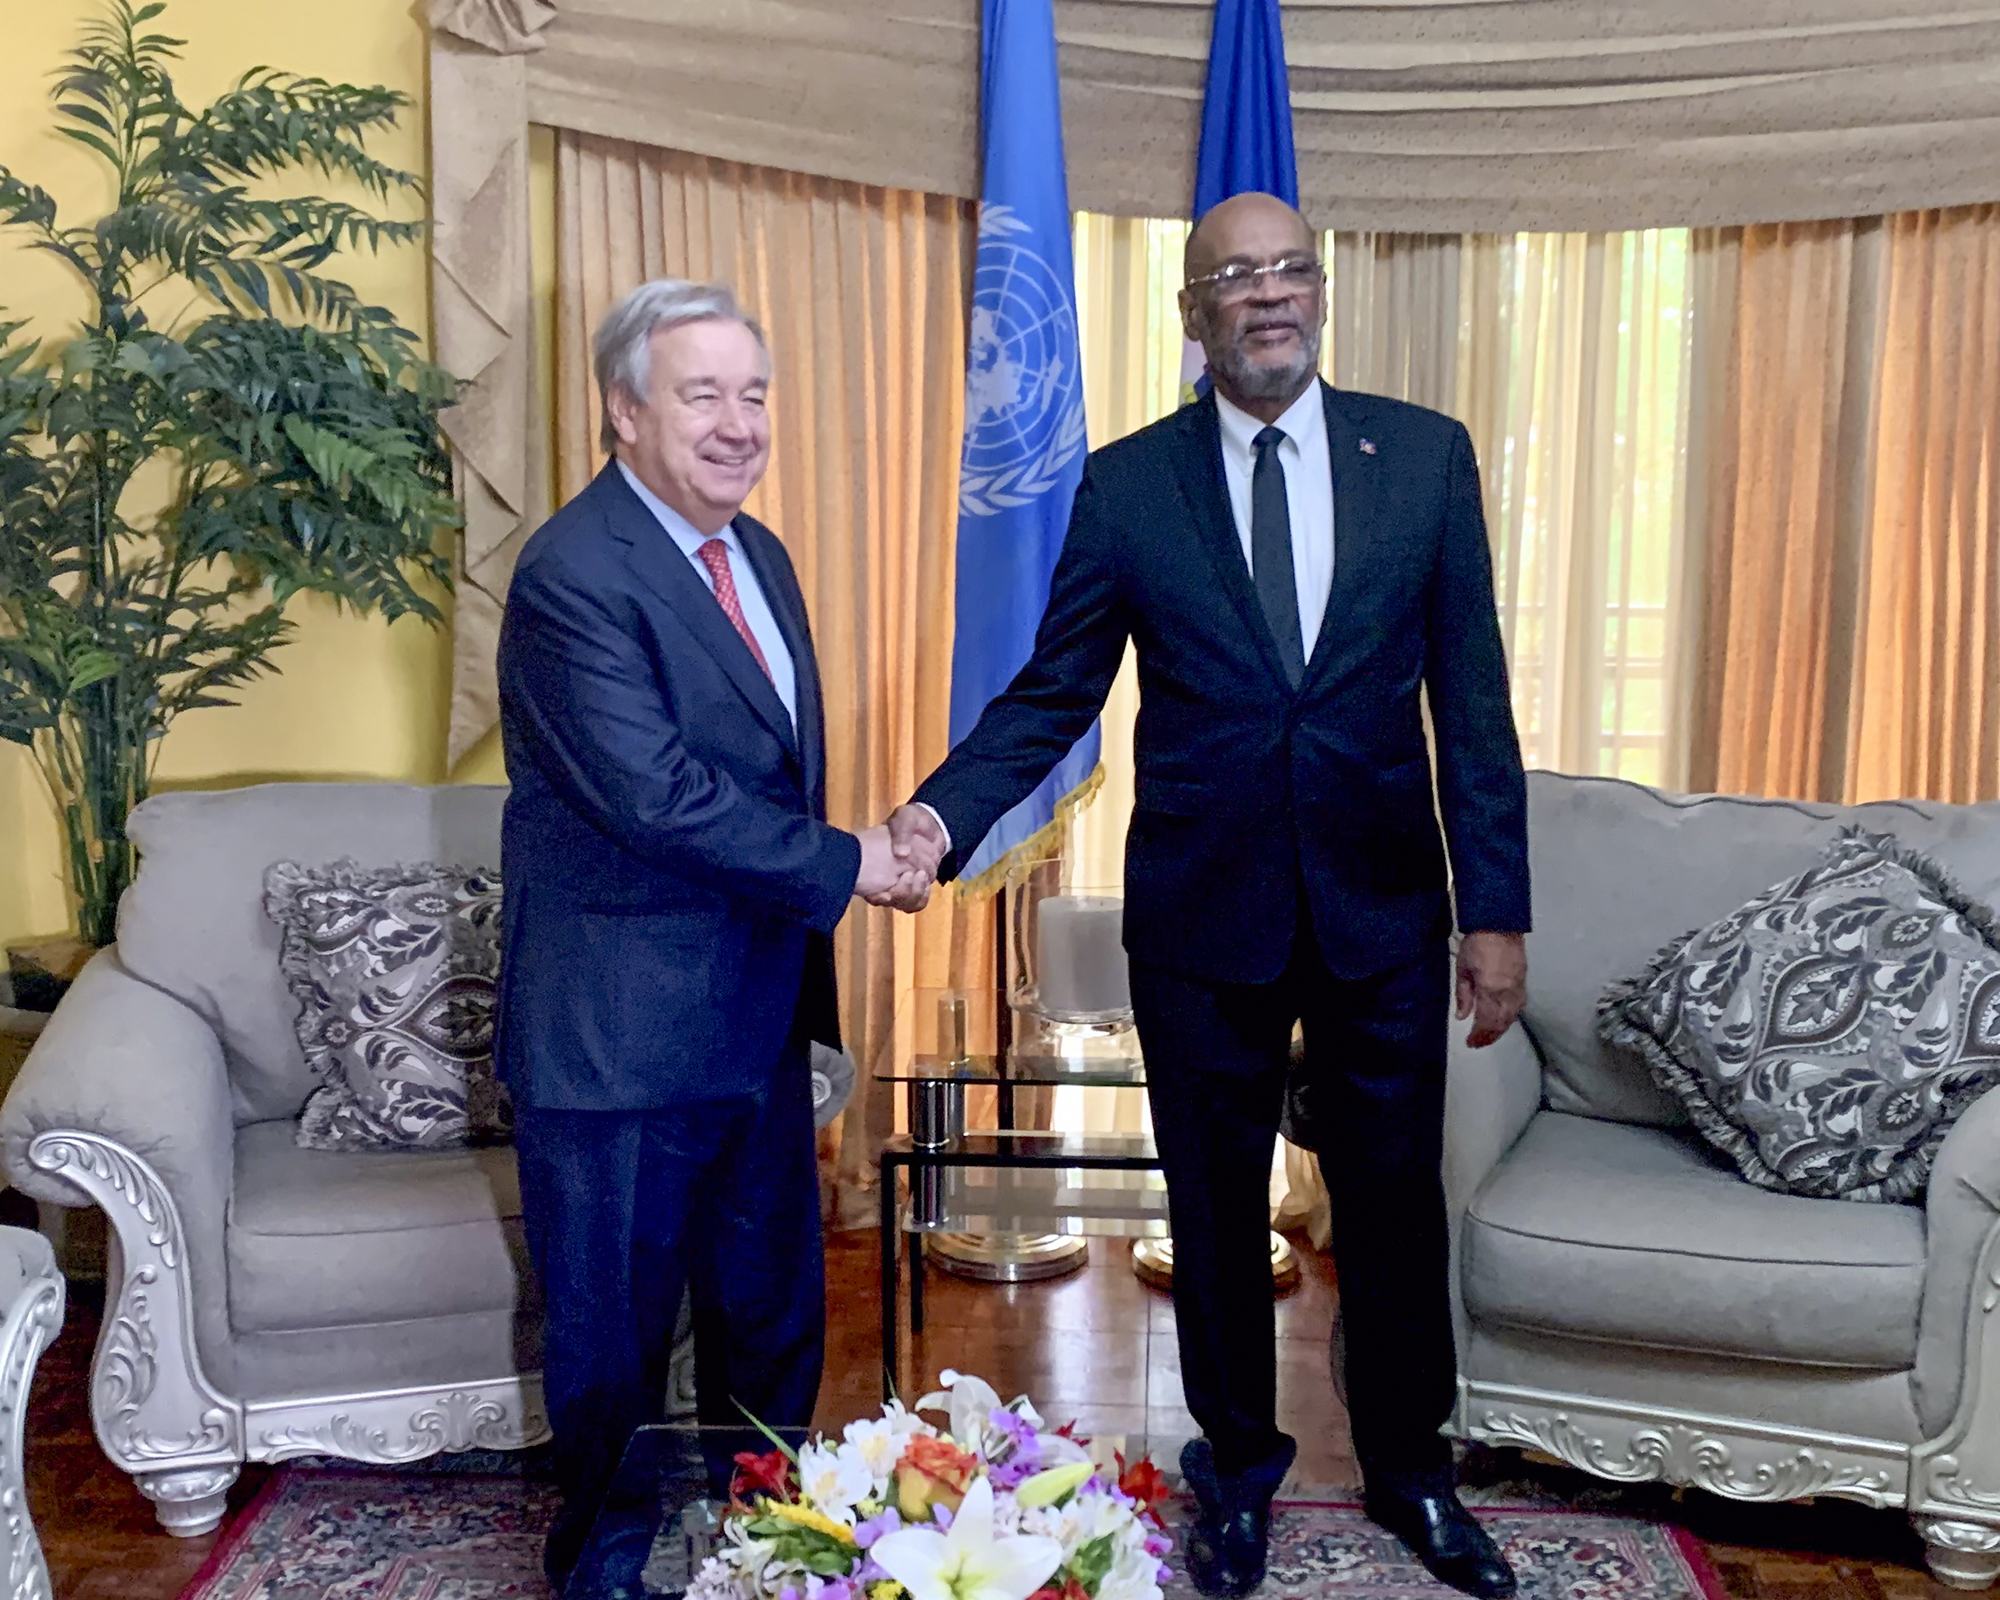 التقى الأمين العام للأمم المتحدة أنطونيو غوتيريش برئيس وزراء هايتي أرييل هنري خلال زيارته إلى بورت-أو-برنس